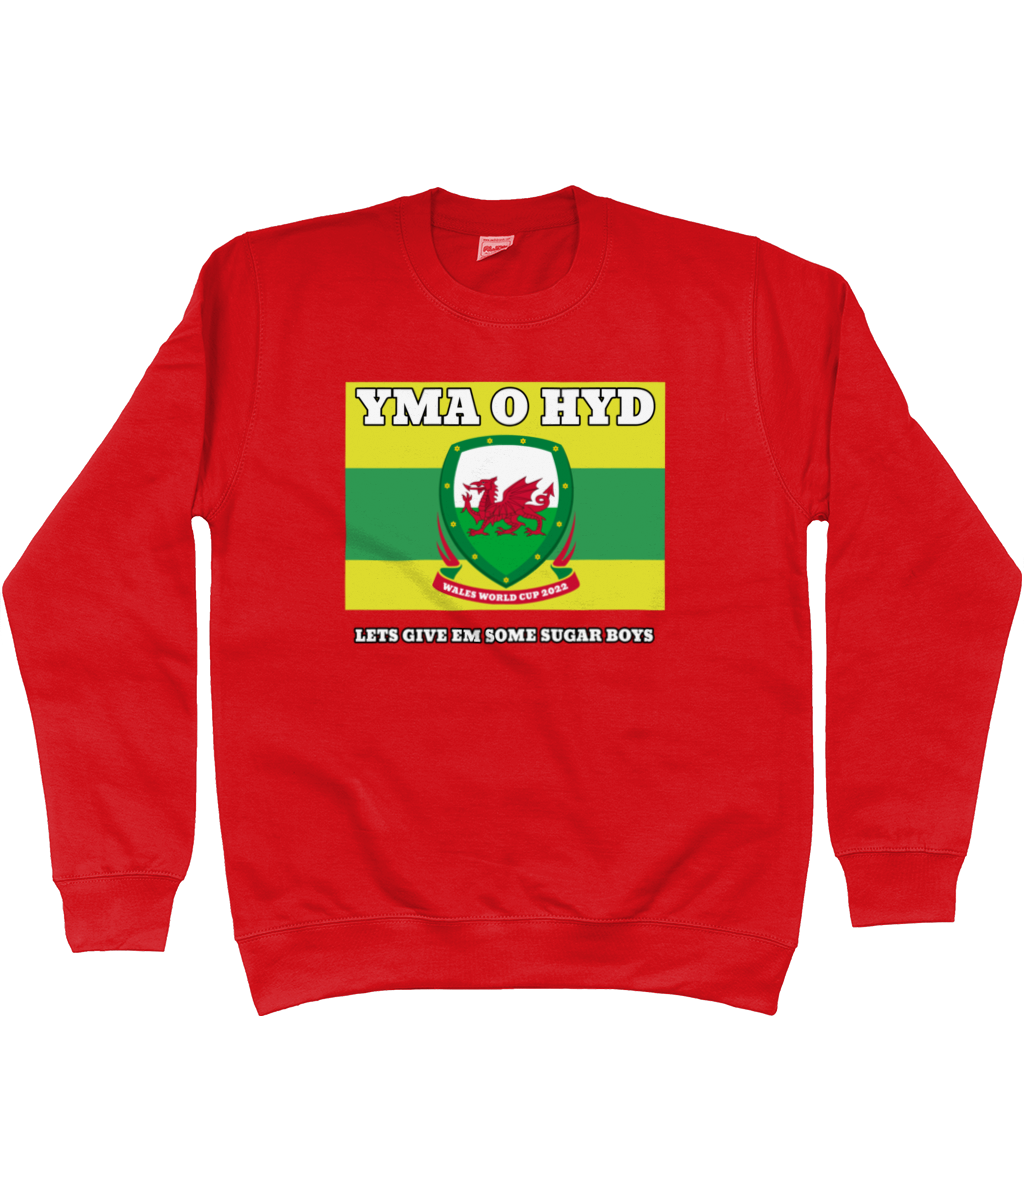 Yma O Hyd - World Cup Sweatshirt